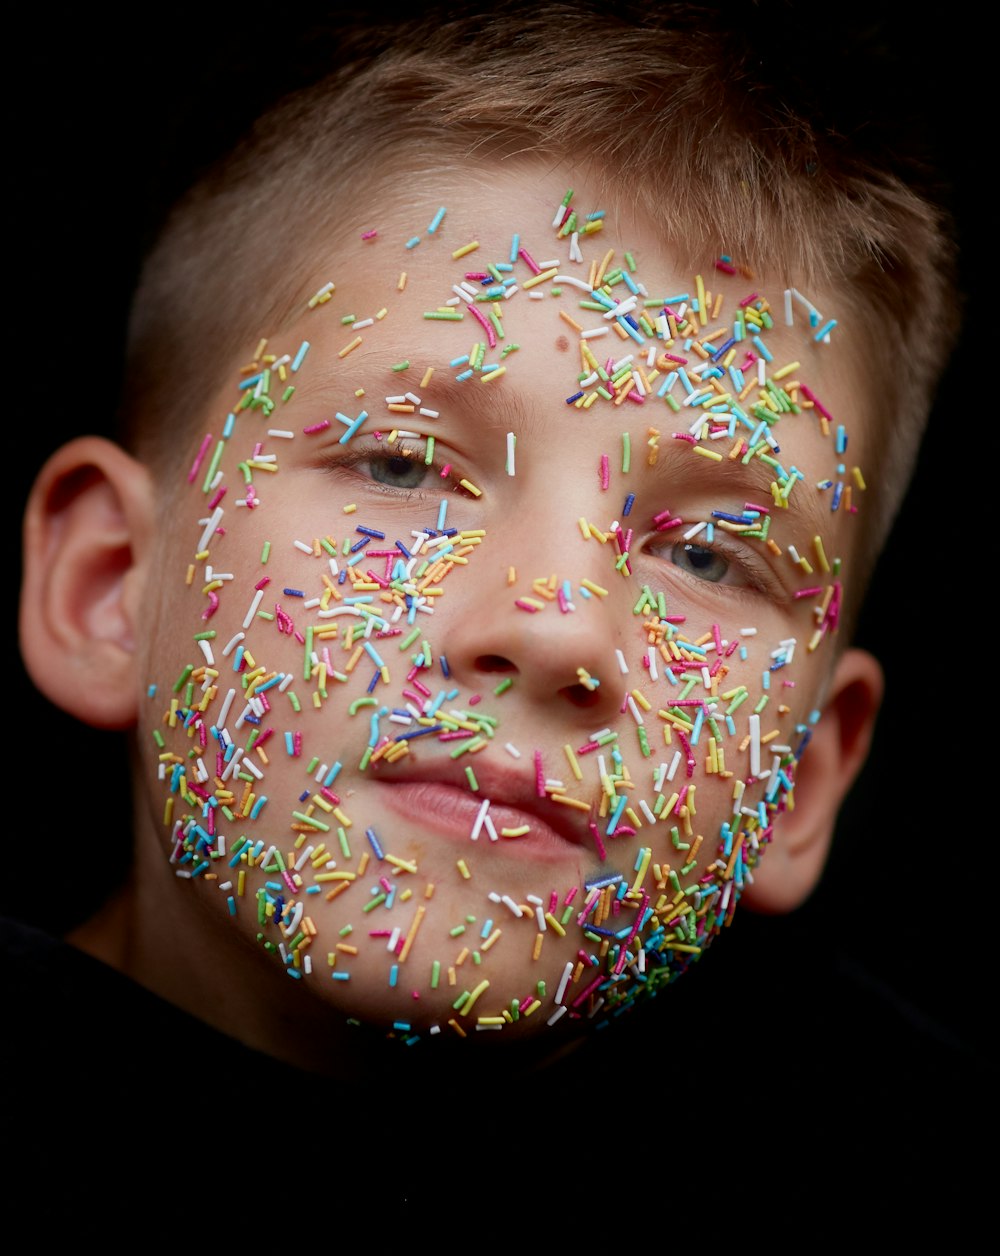 소년의 얼굴에 다양한 색상의 스프링클러 사탕